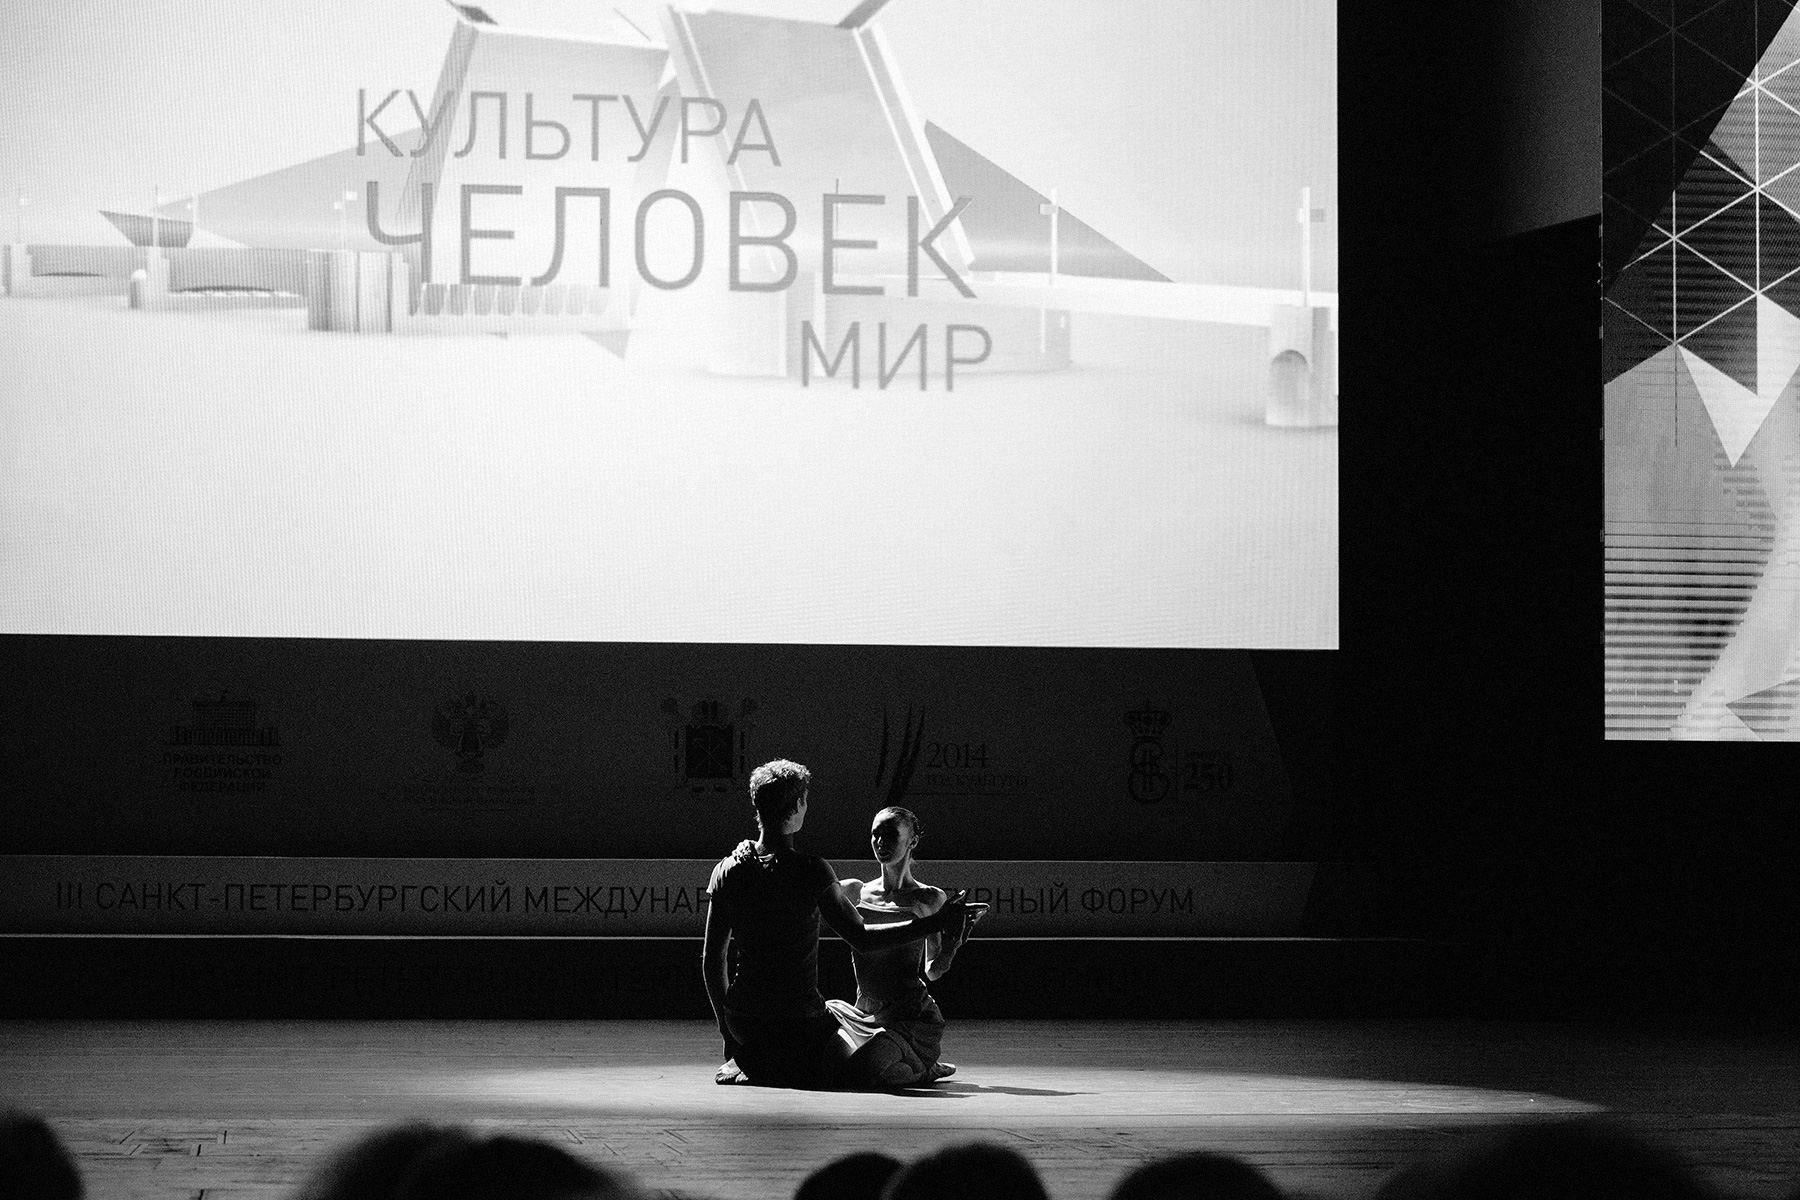 III Санкт-Петербургский международный культурный форум 2014